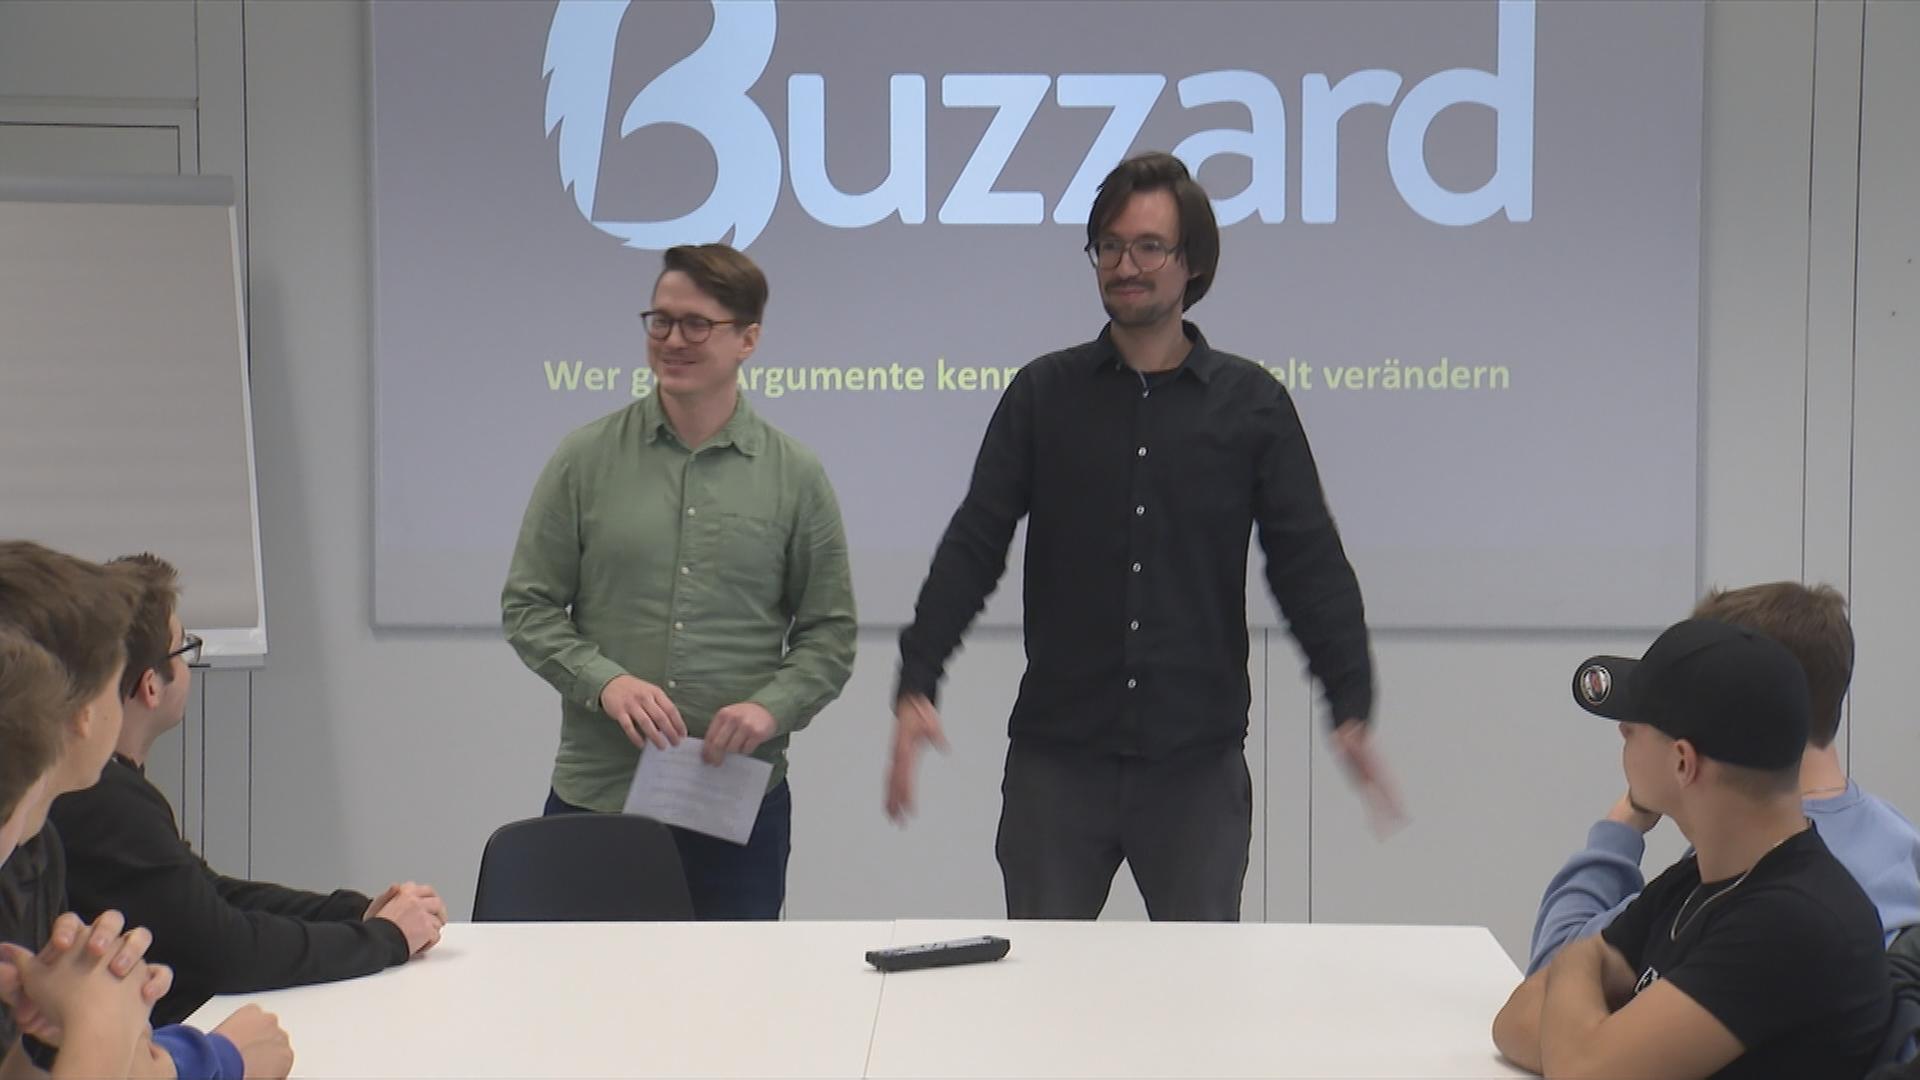 Auf dem Bild sieht man wie die zwei Gründer die neue App Buzzard vortellen.